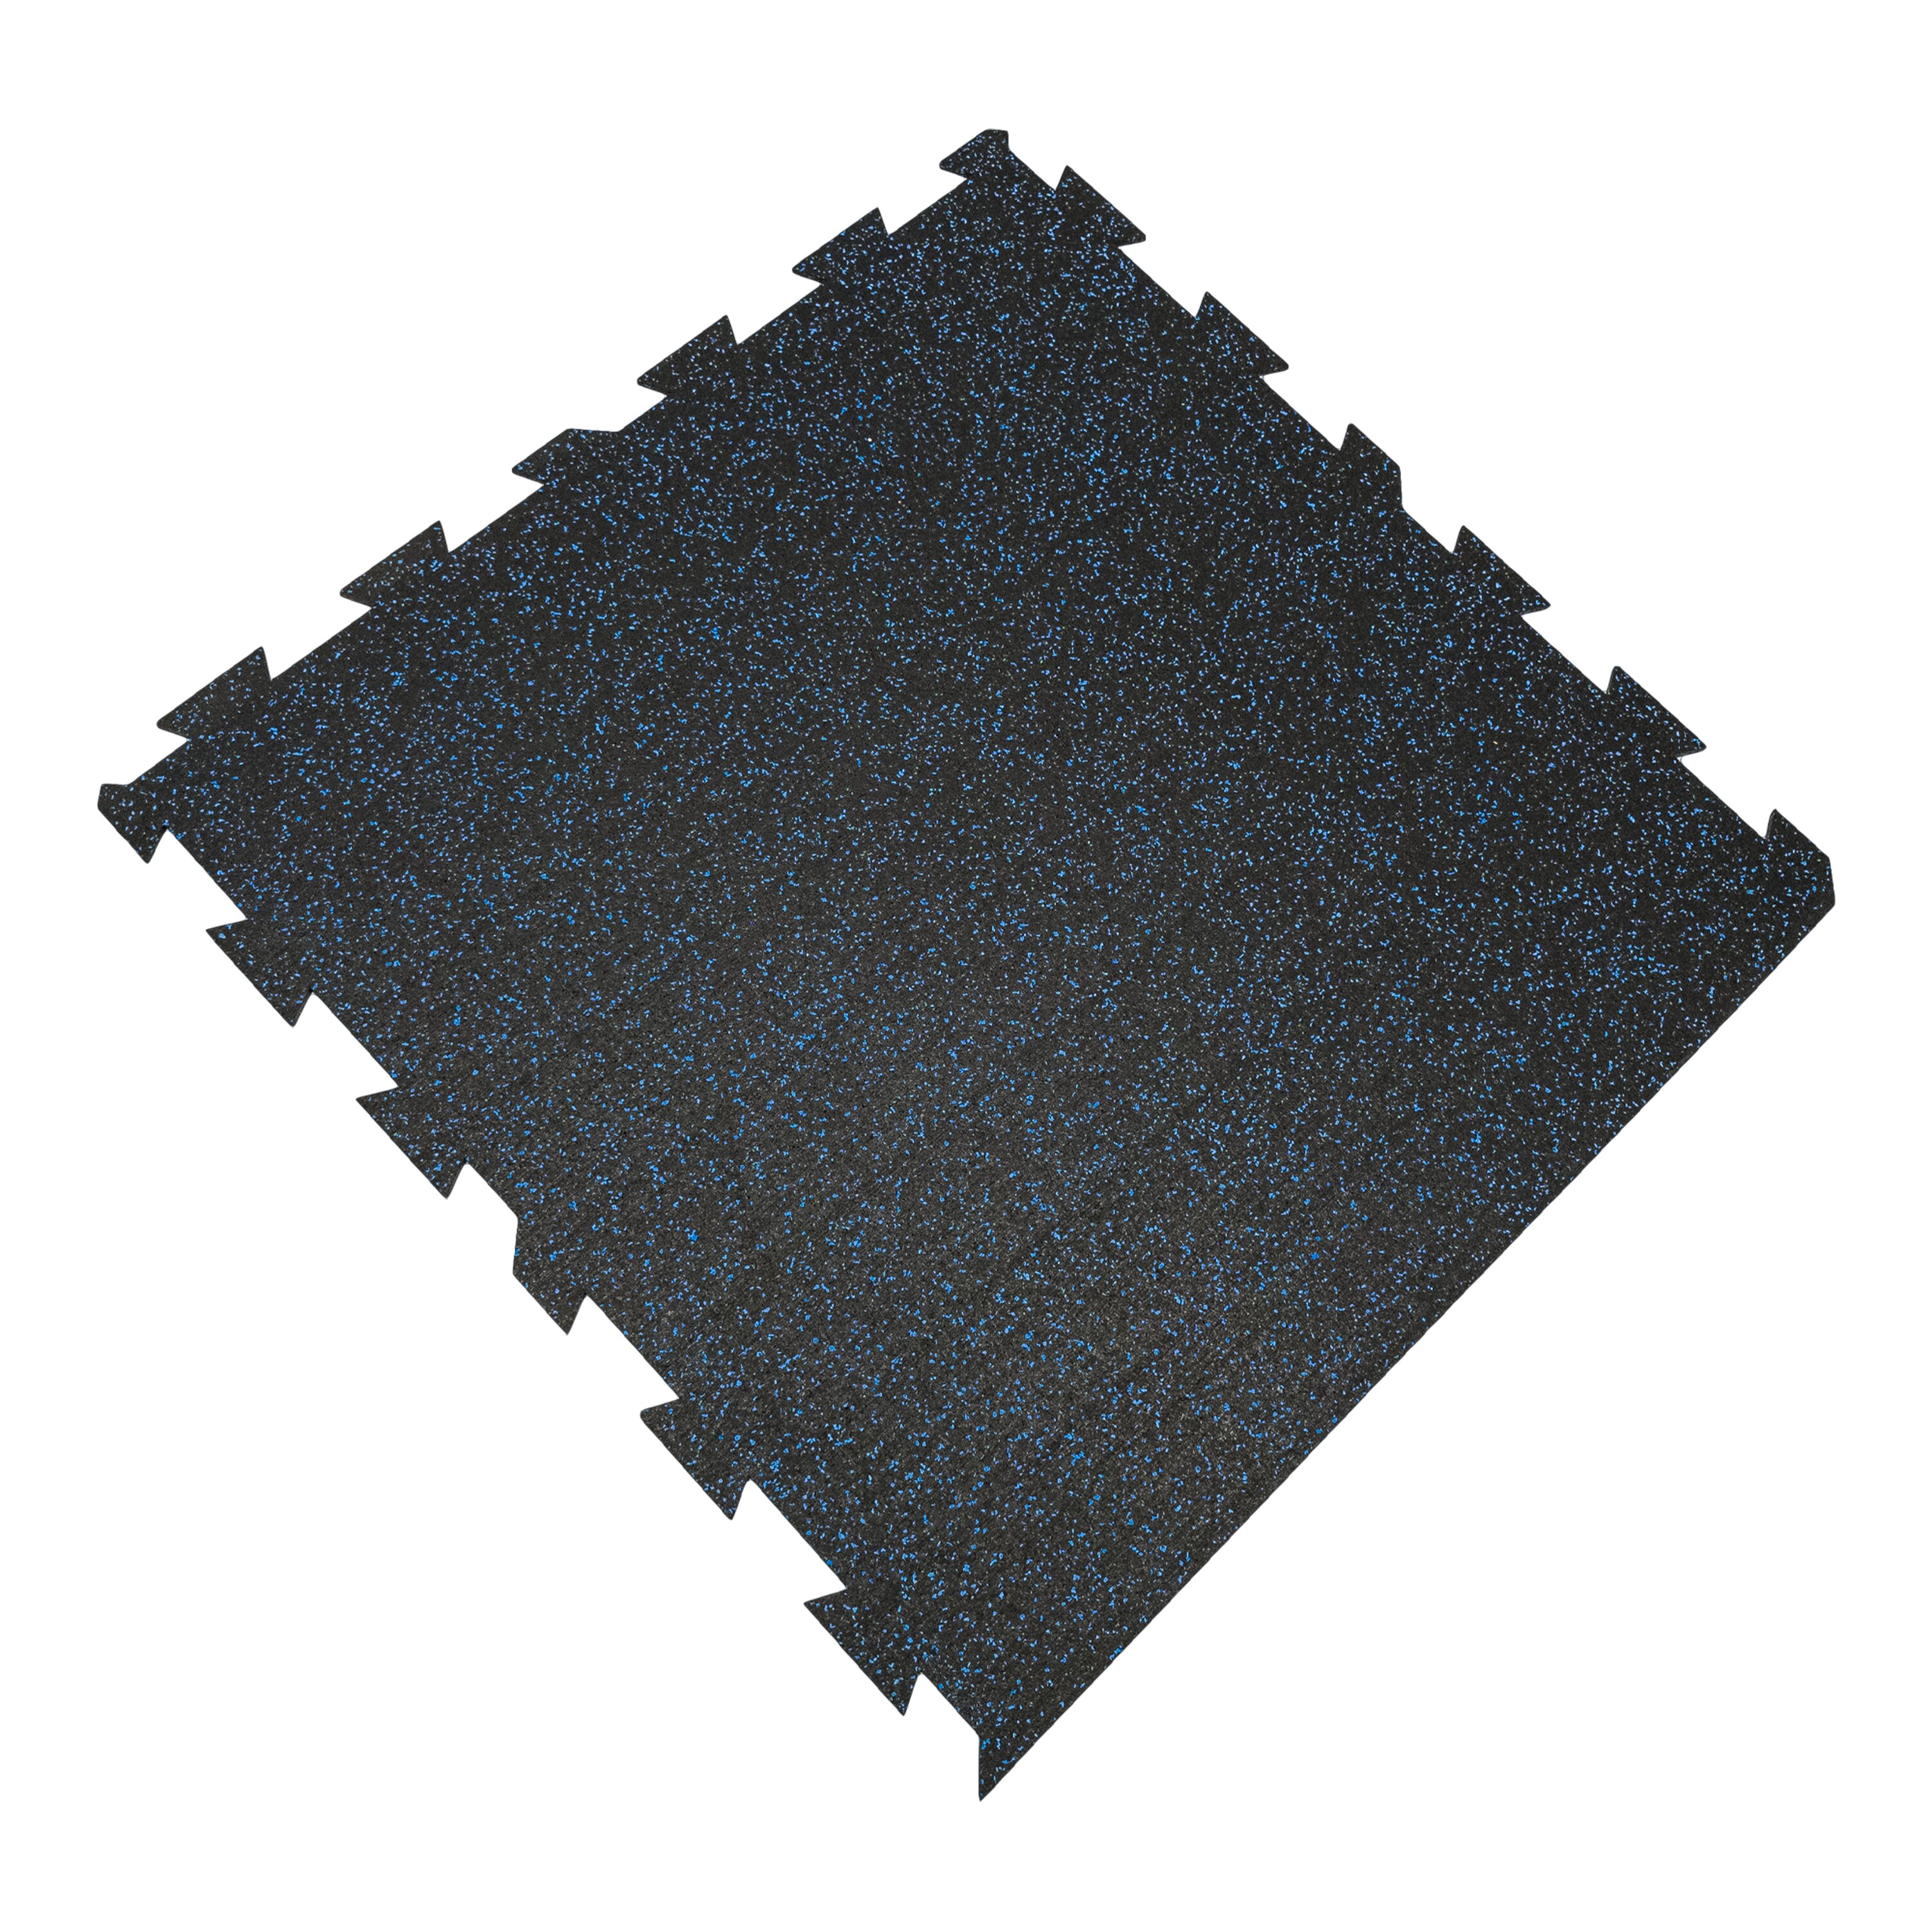 Čierno-modrá gumová modulová puzzle dlažba (okraj) FLOMA FitFlo SF1050 - dĺžka 100 cm, šírka 100 cm, výška 1,6 cm